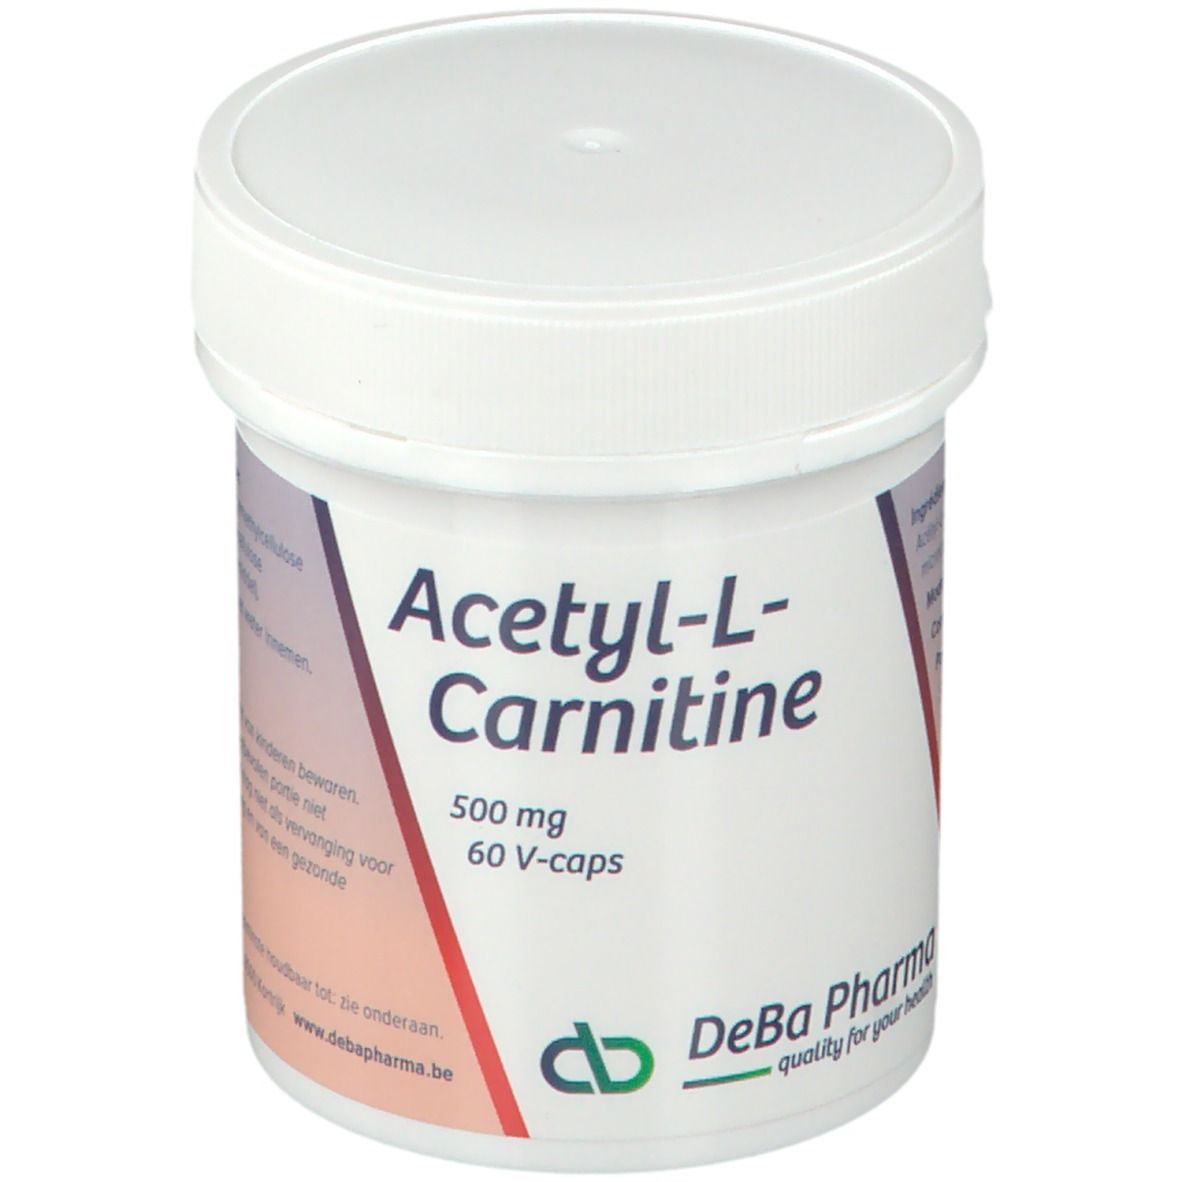 DEBA PHARMA Deba Acetyl-L-Carnitin 500 mg